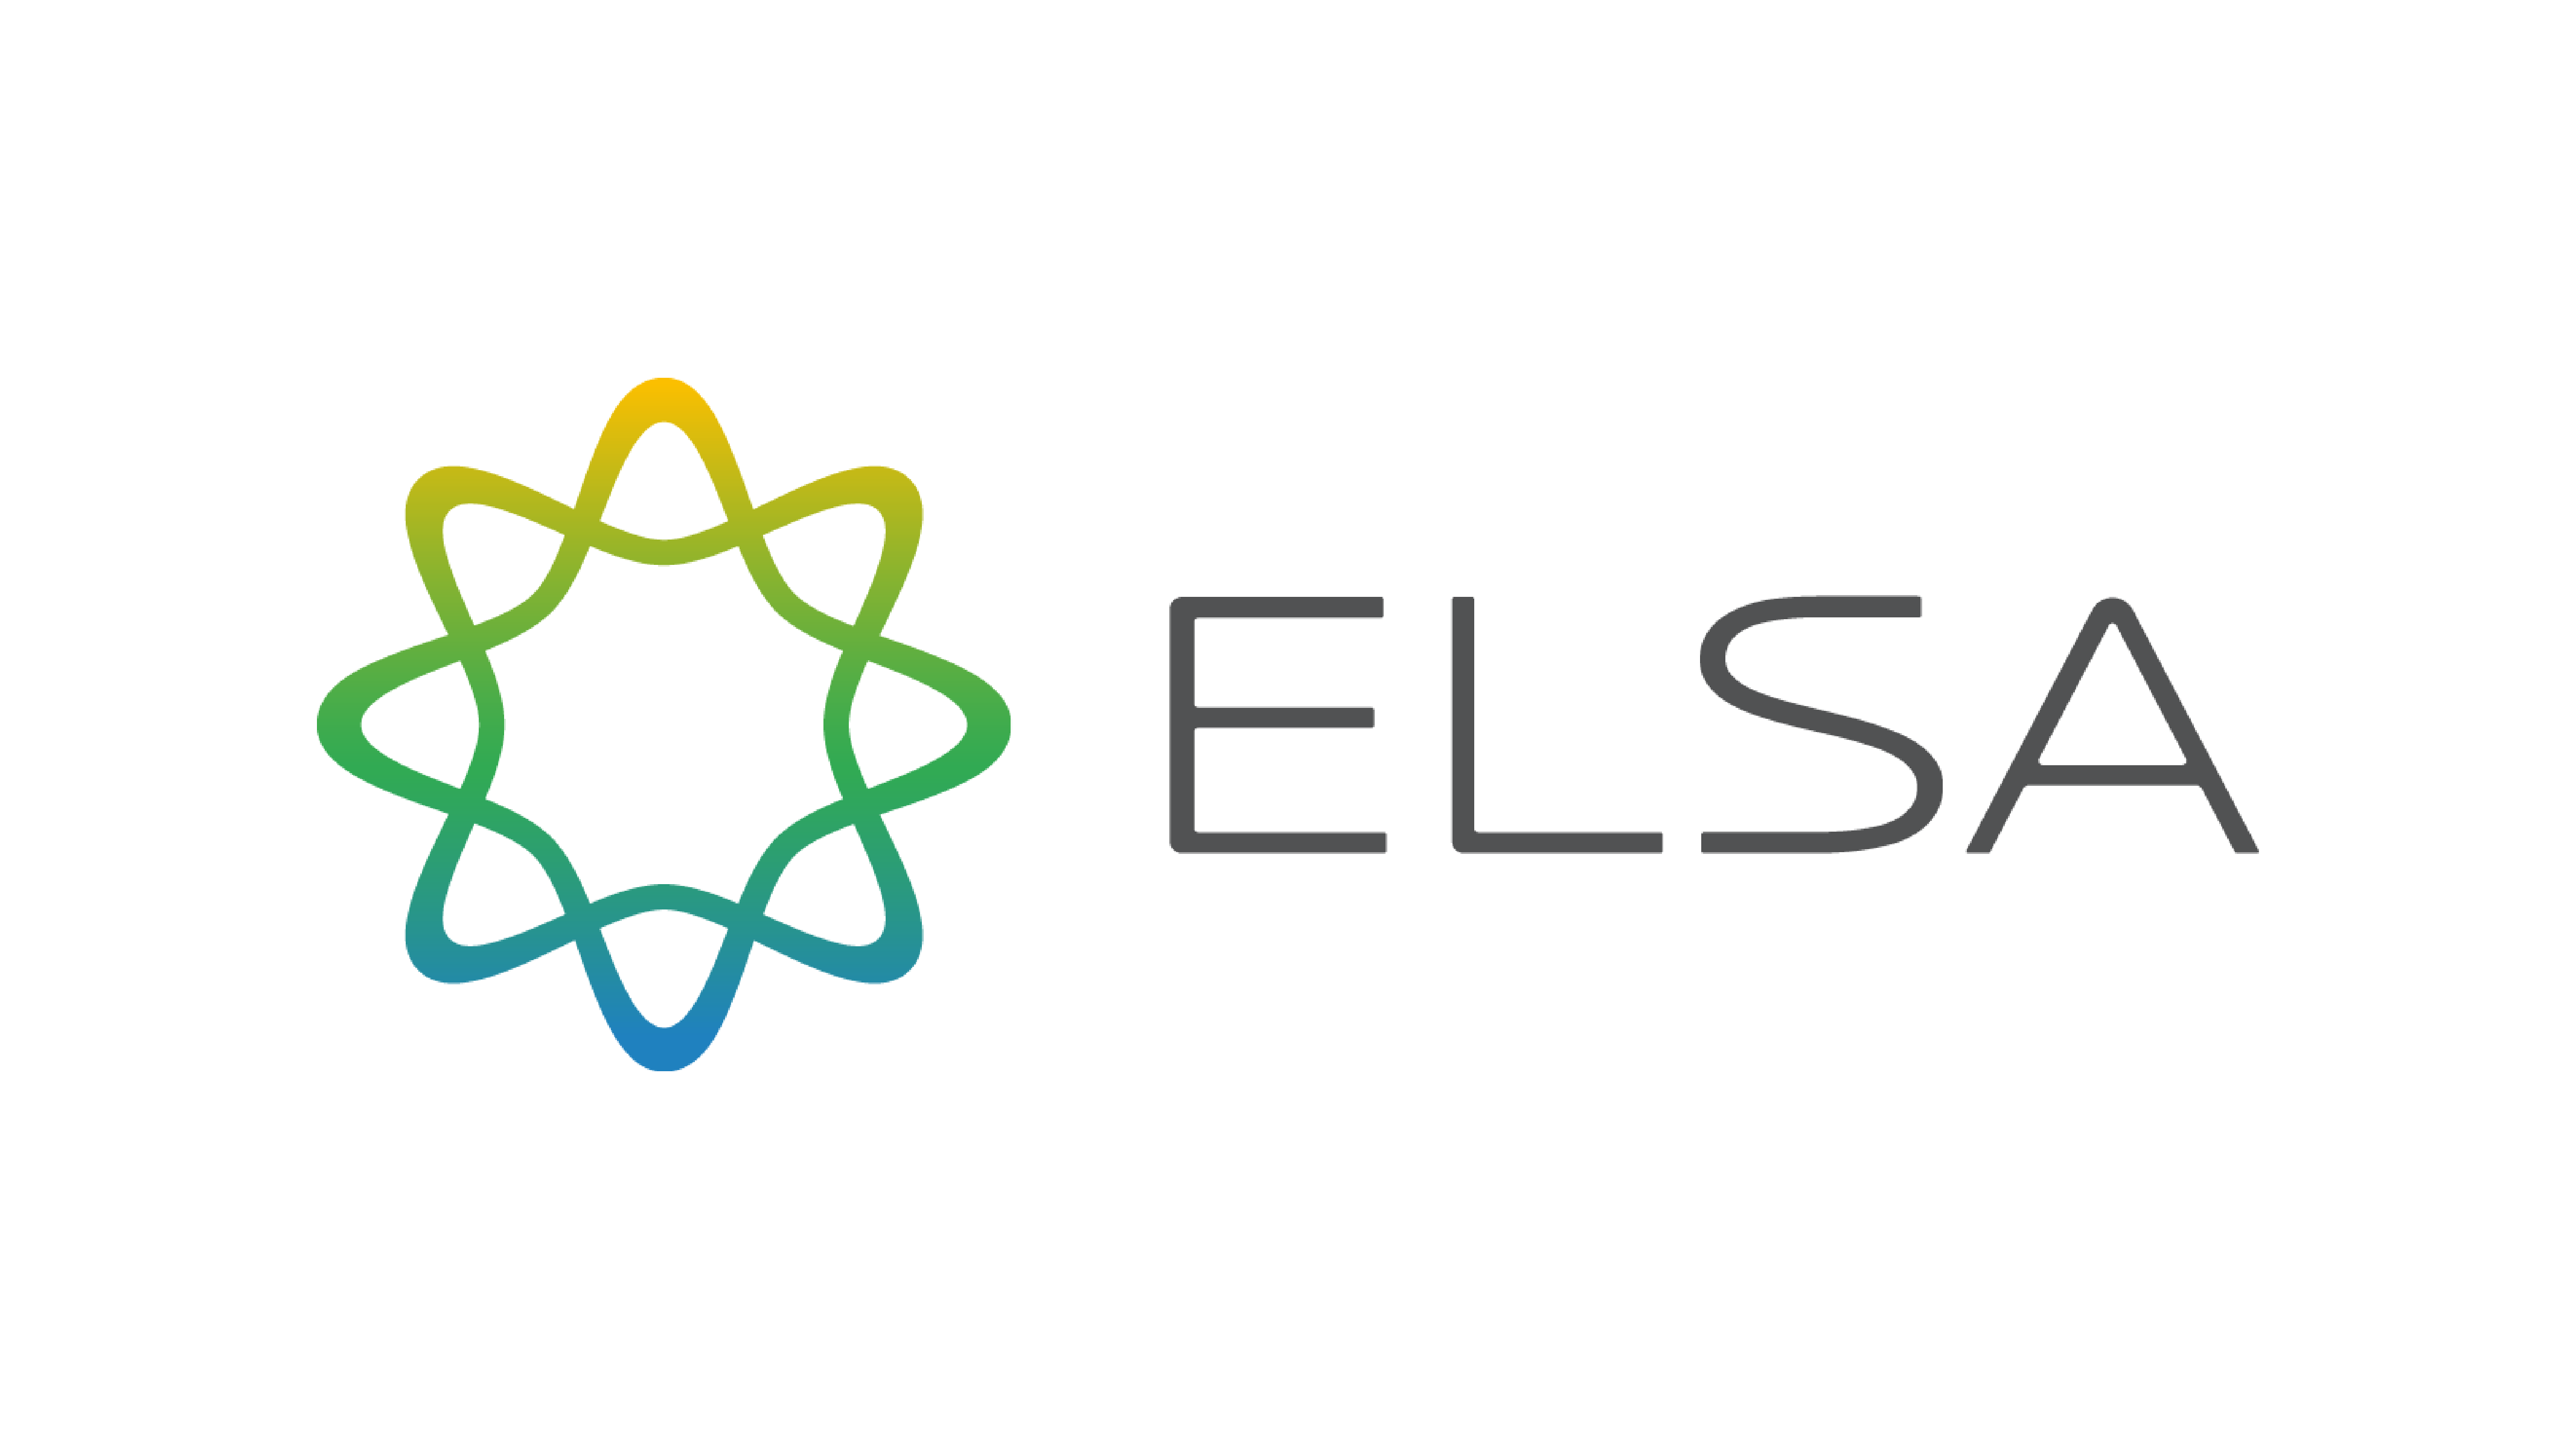 Hướng dẫn tải phần mềm ELSA Speak cho máy tính để con học tiếng Anh trên màn hình lớn